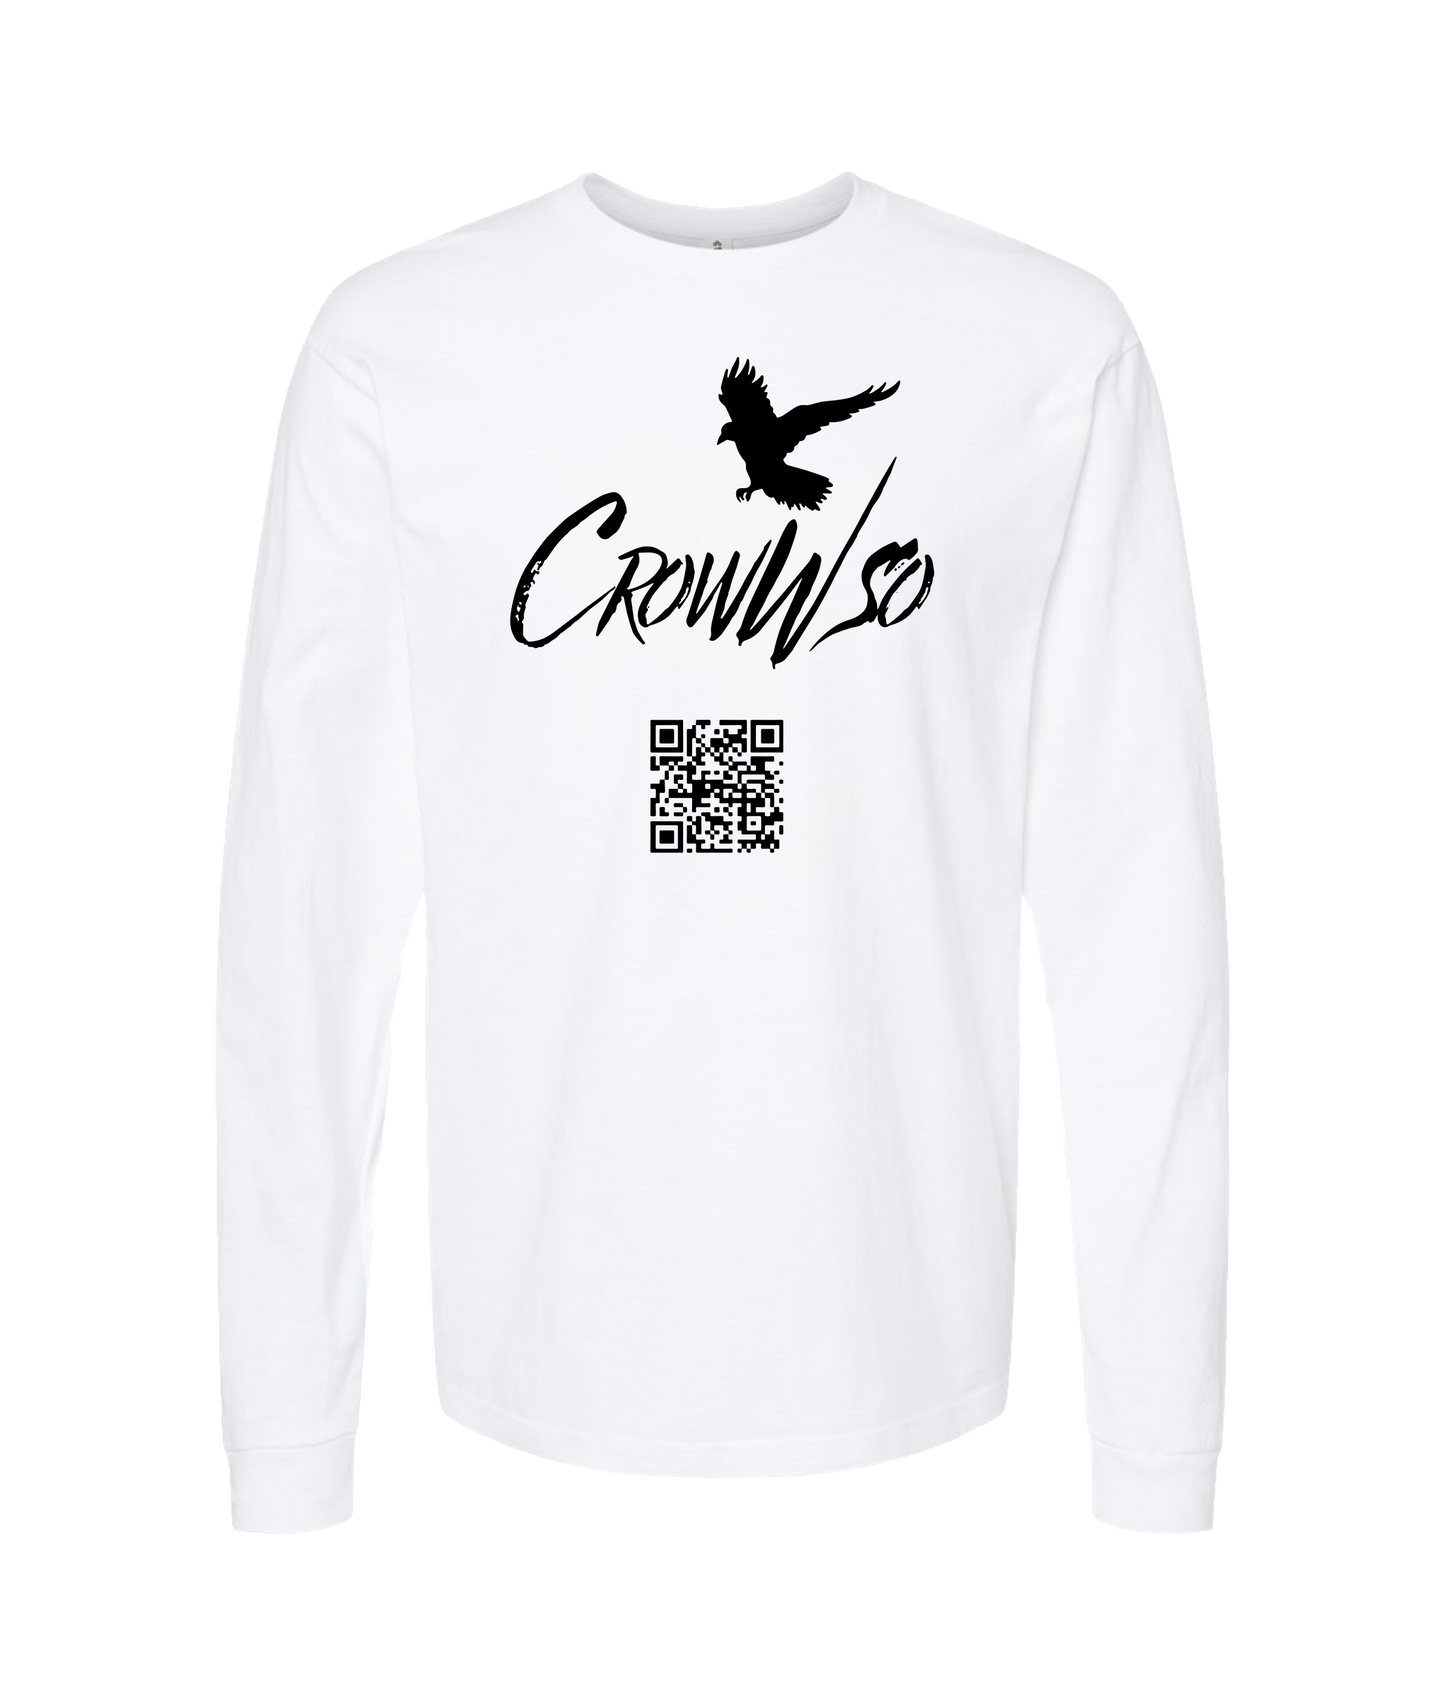 CrowWsoFly - Crow - White Long Sleeve T